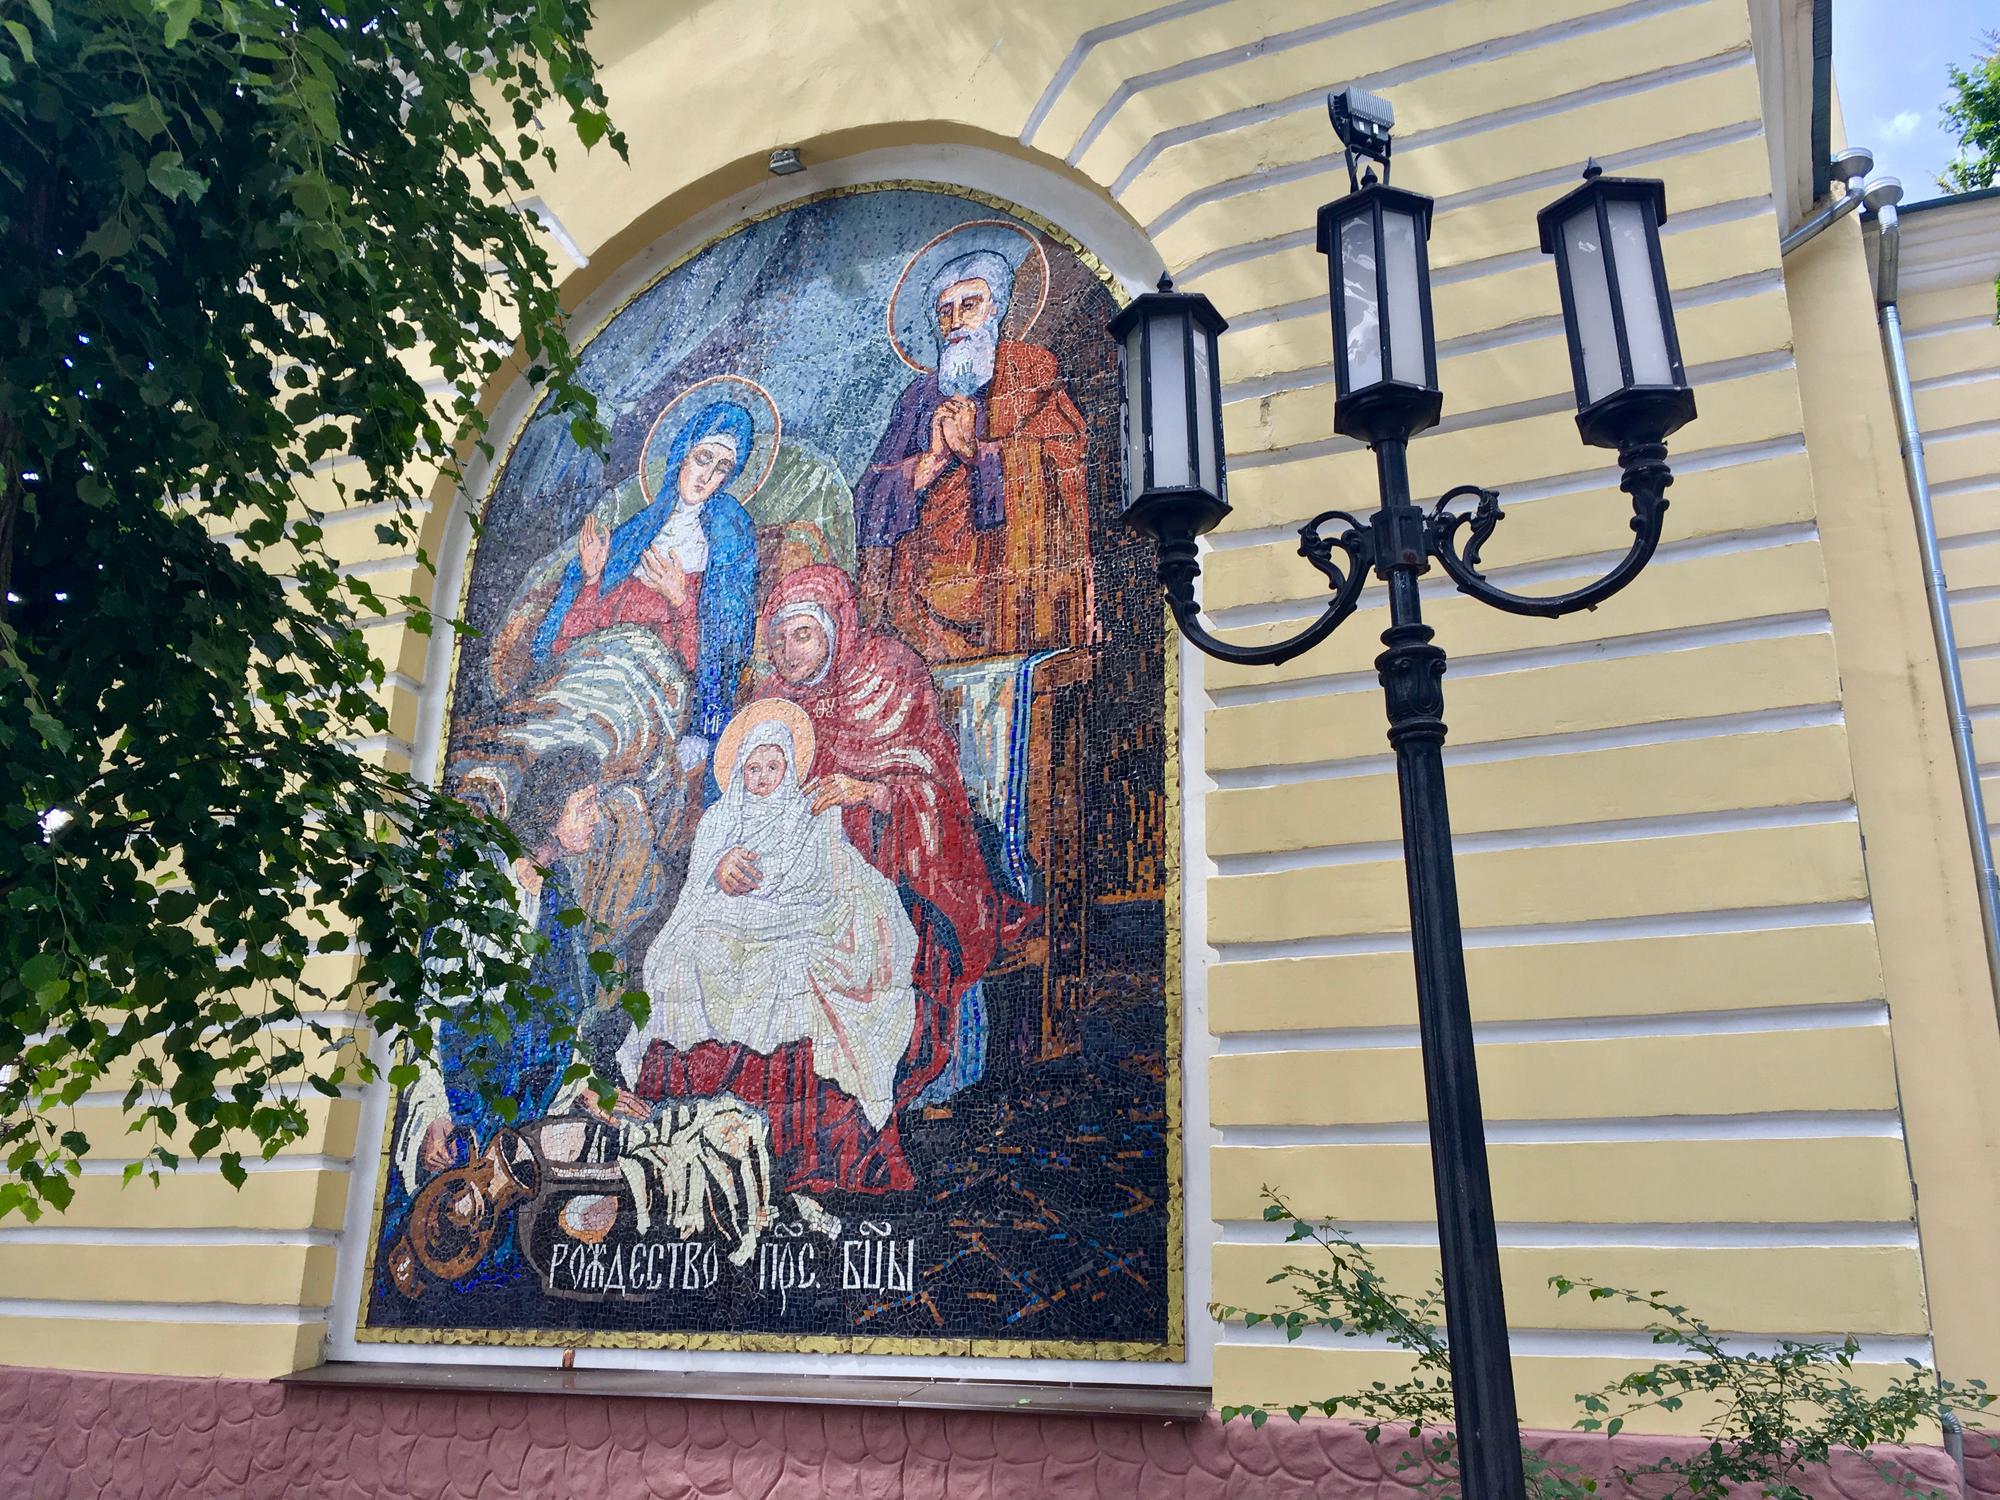 🇷🇺 Брянск, Россия, июнь 2017.